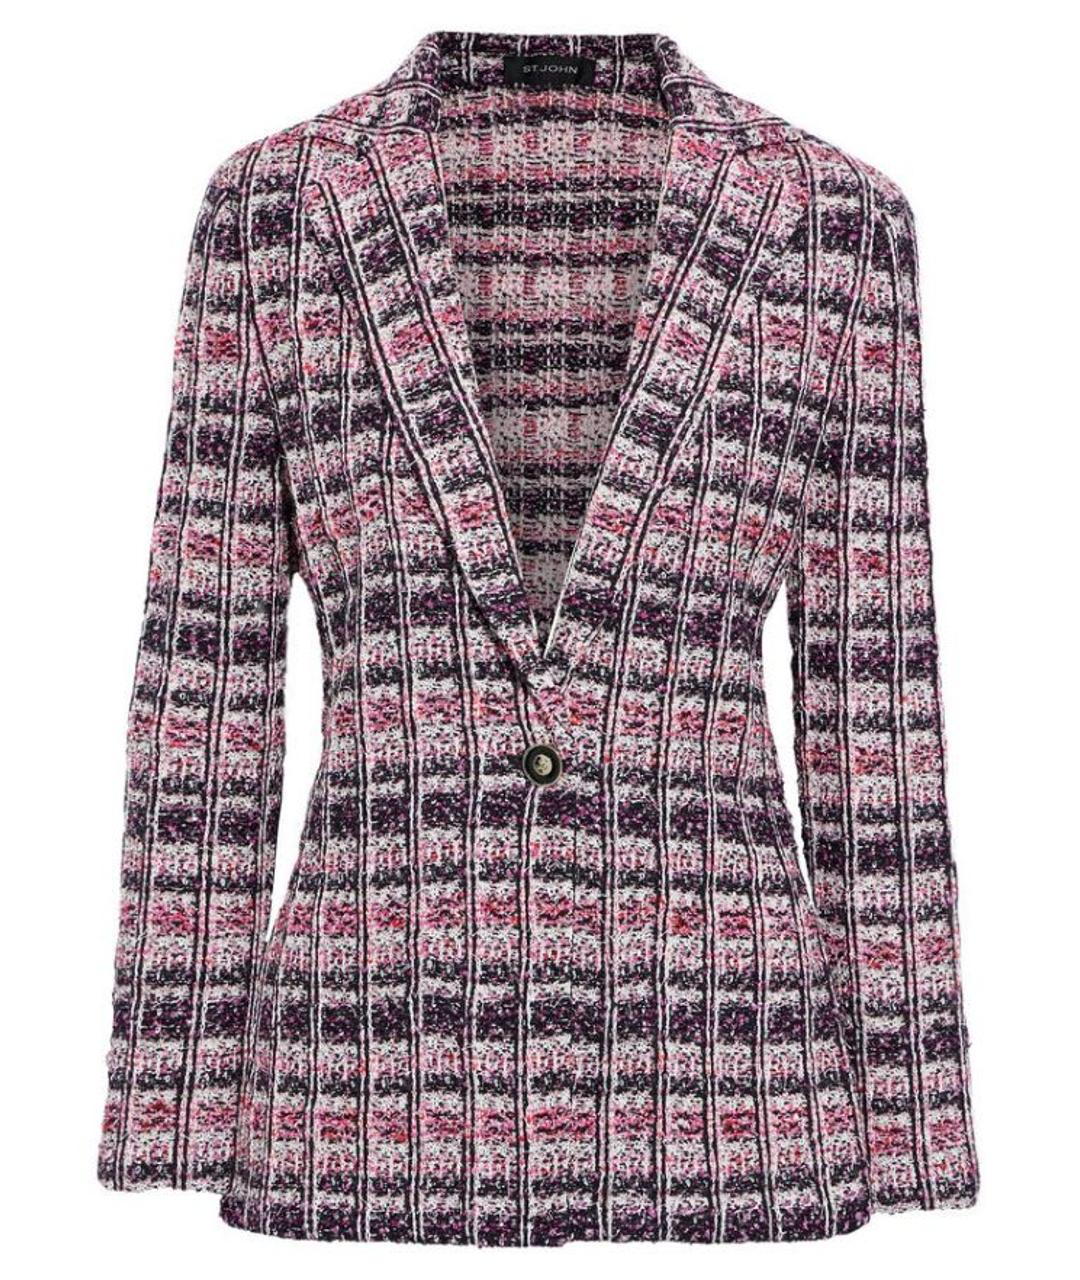 ST. JOHN Розовый полиамидовый жакет/пиджак, фото 1